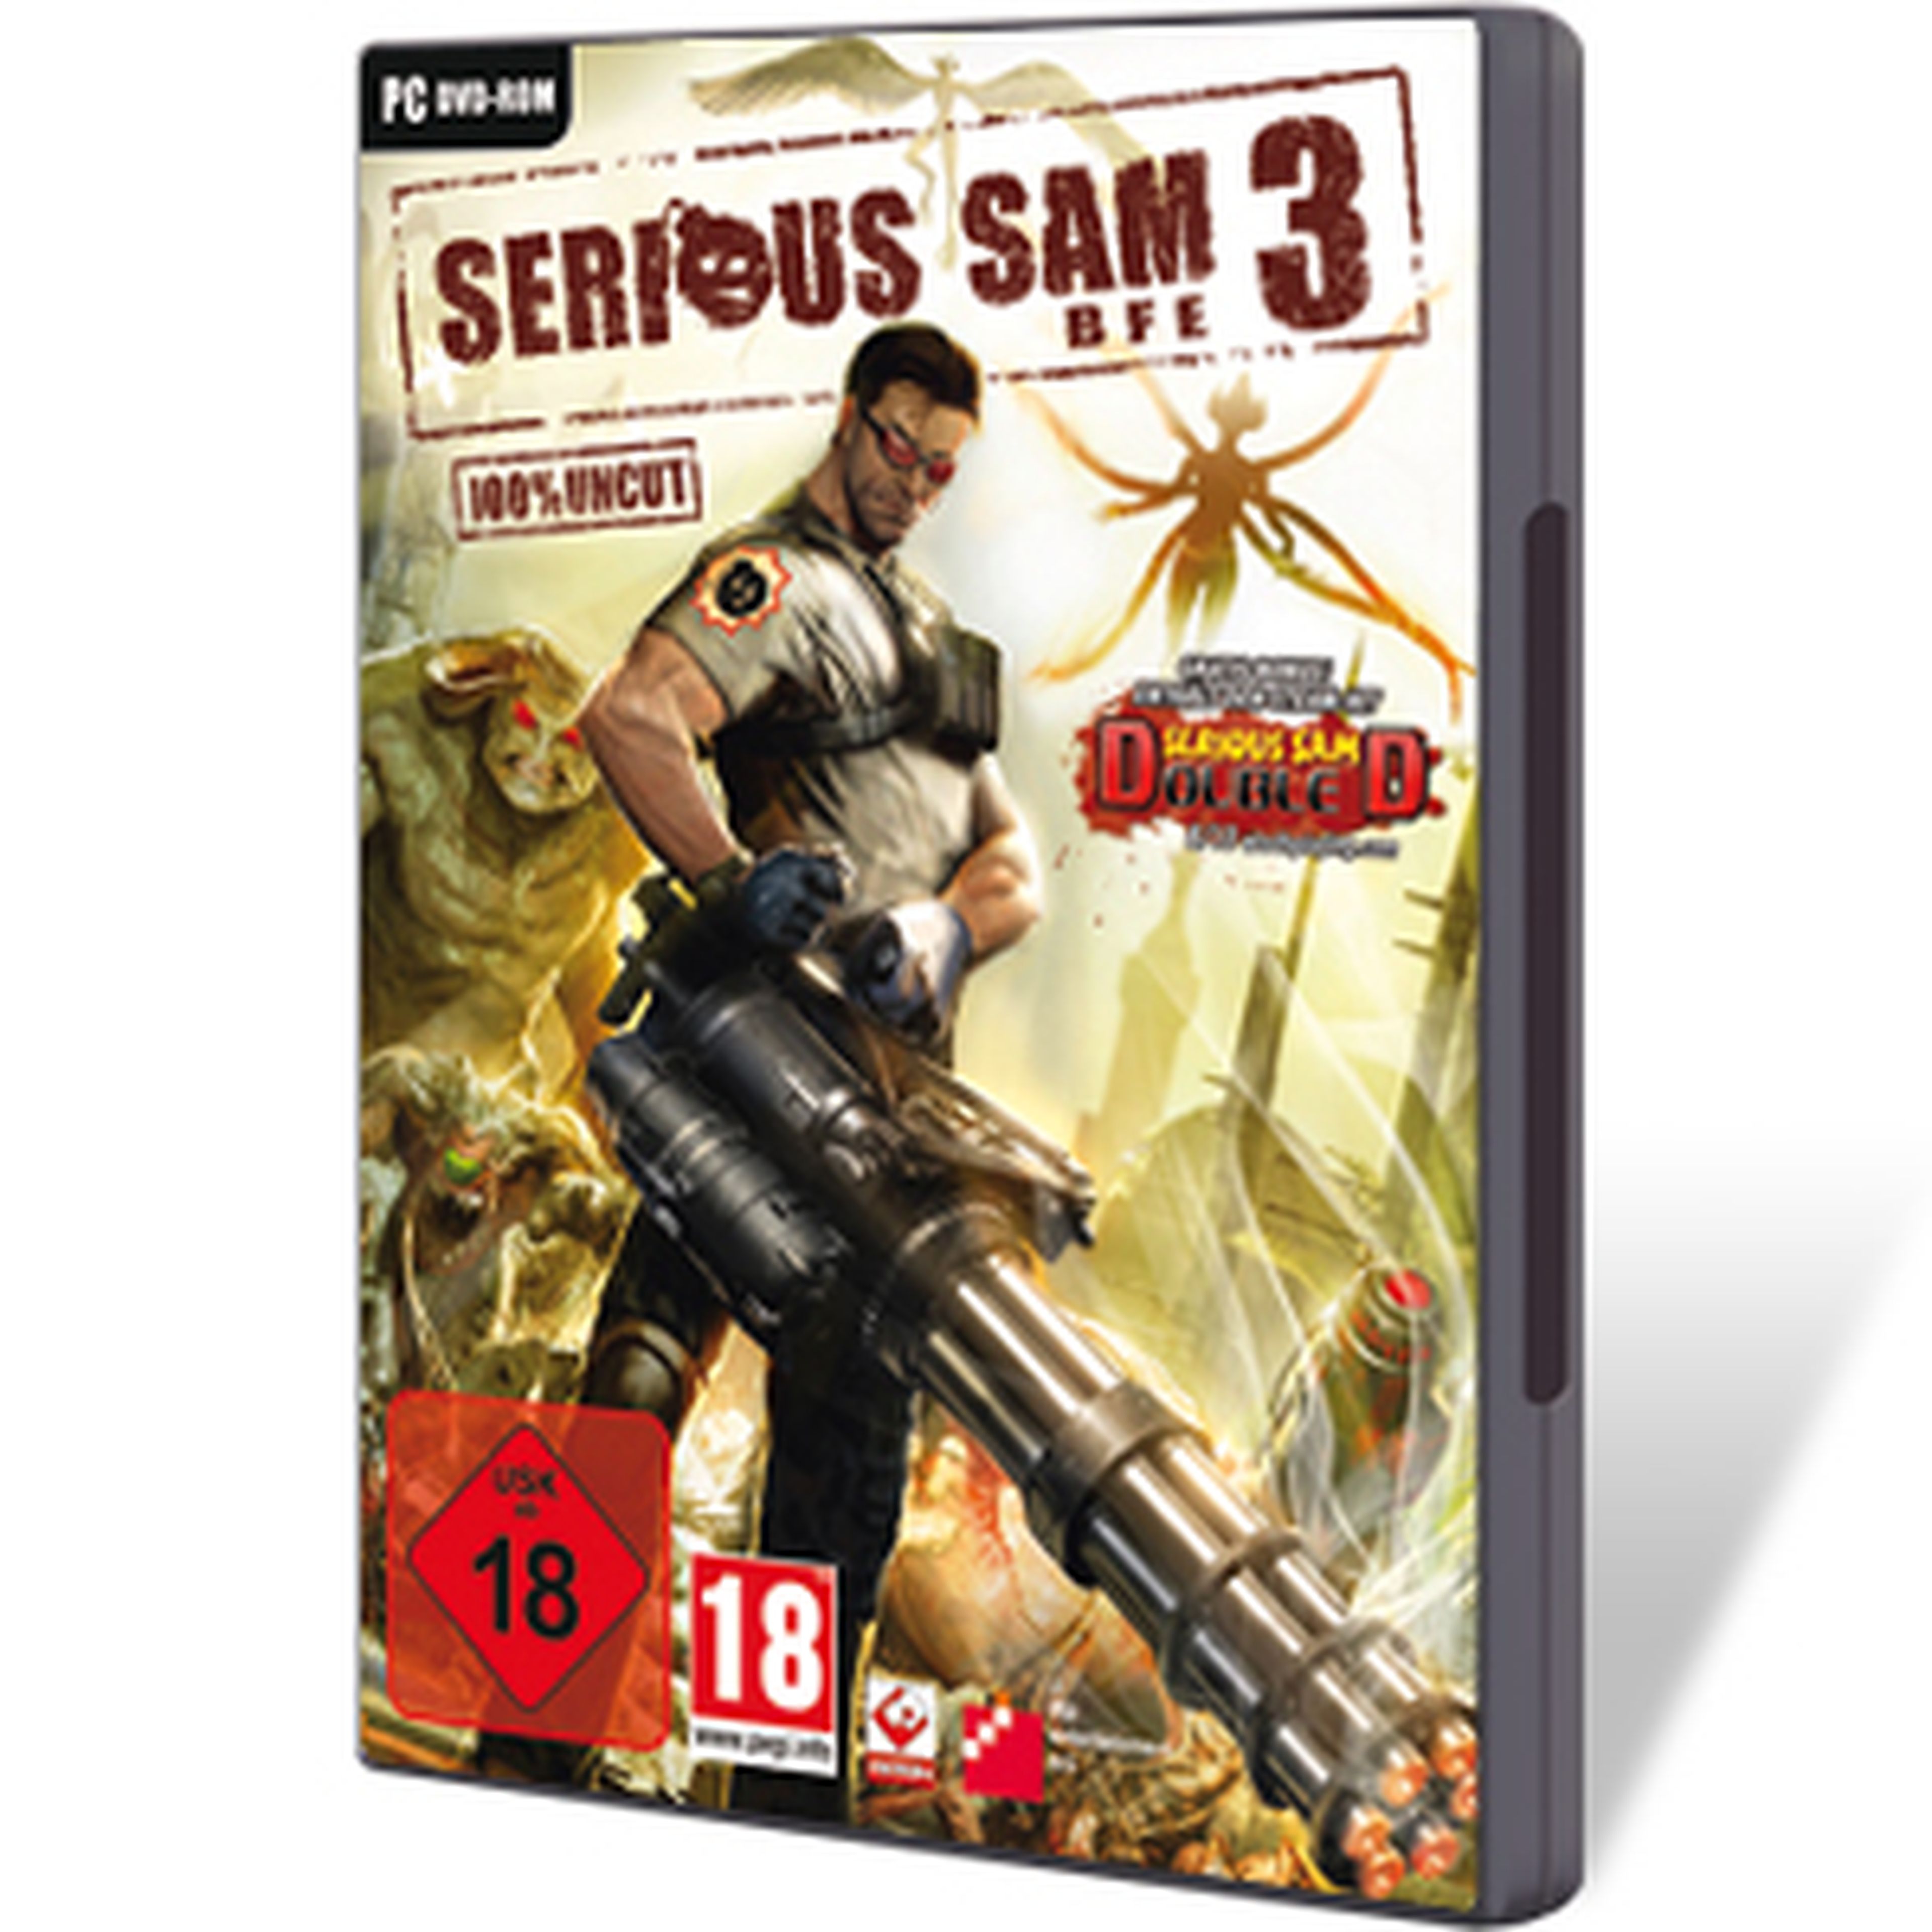 Serious Sam 3 para PC